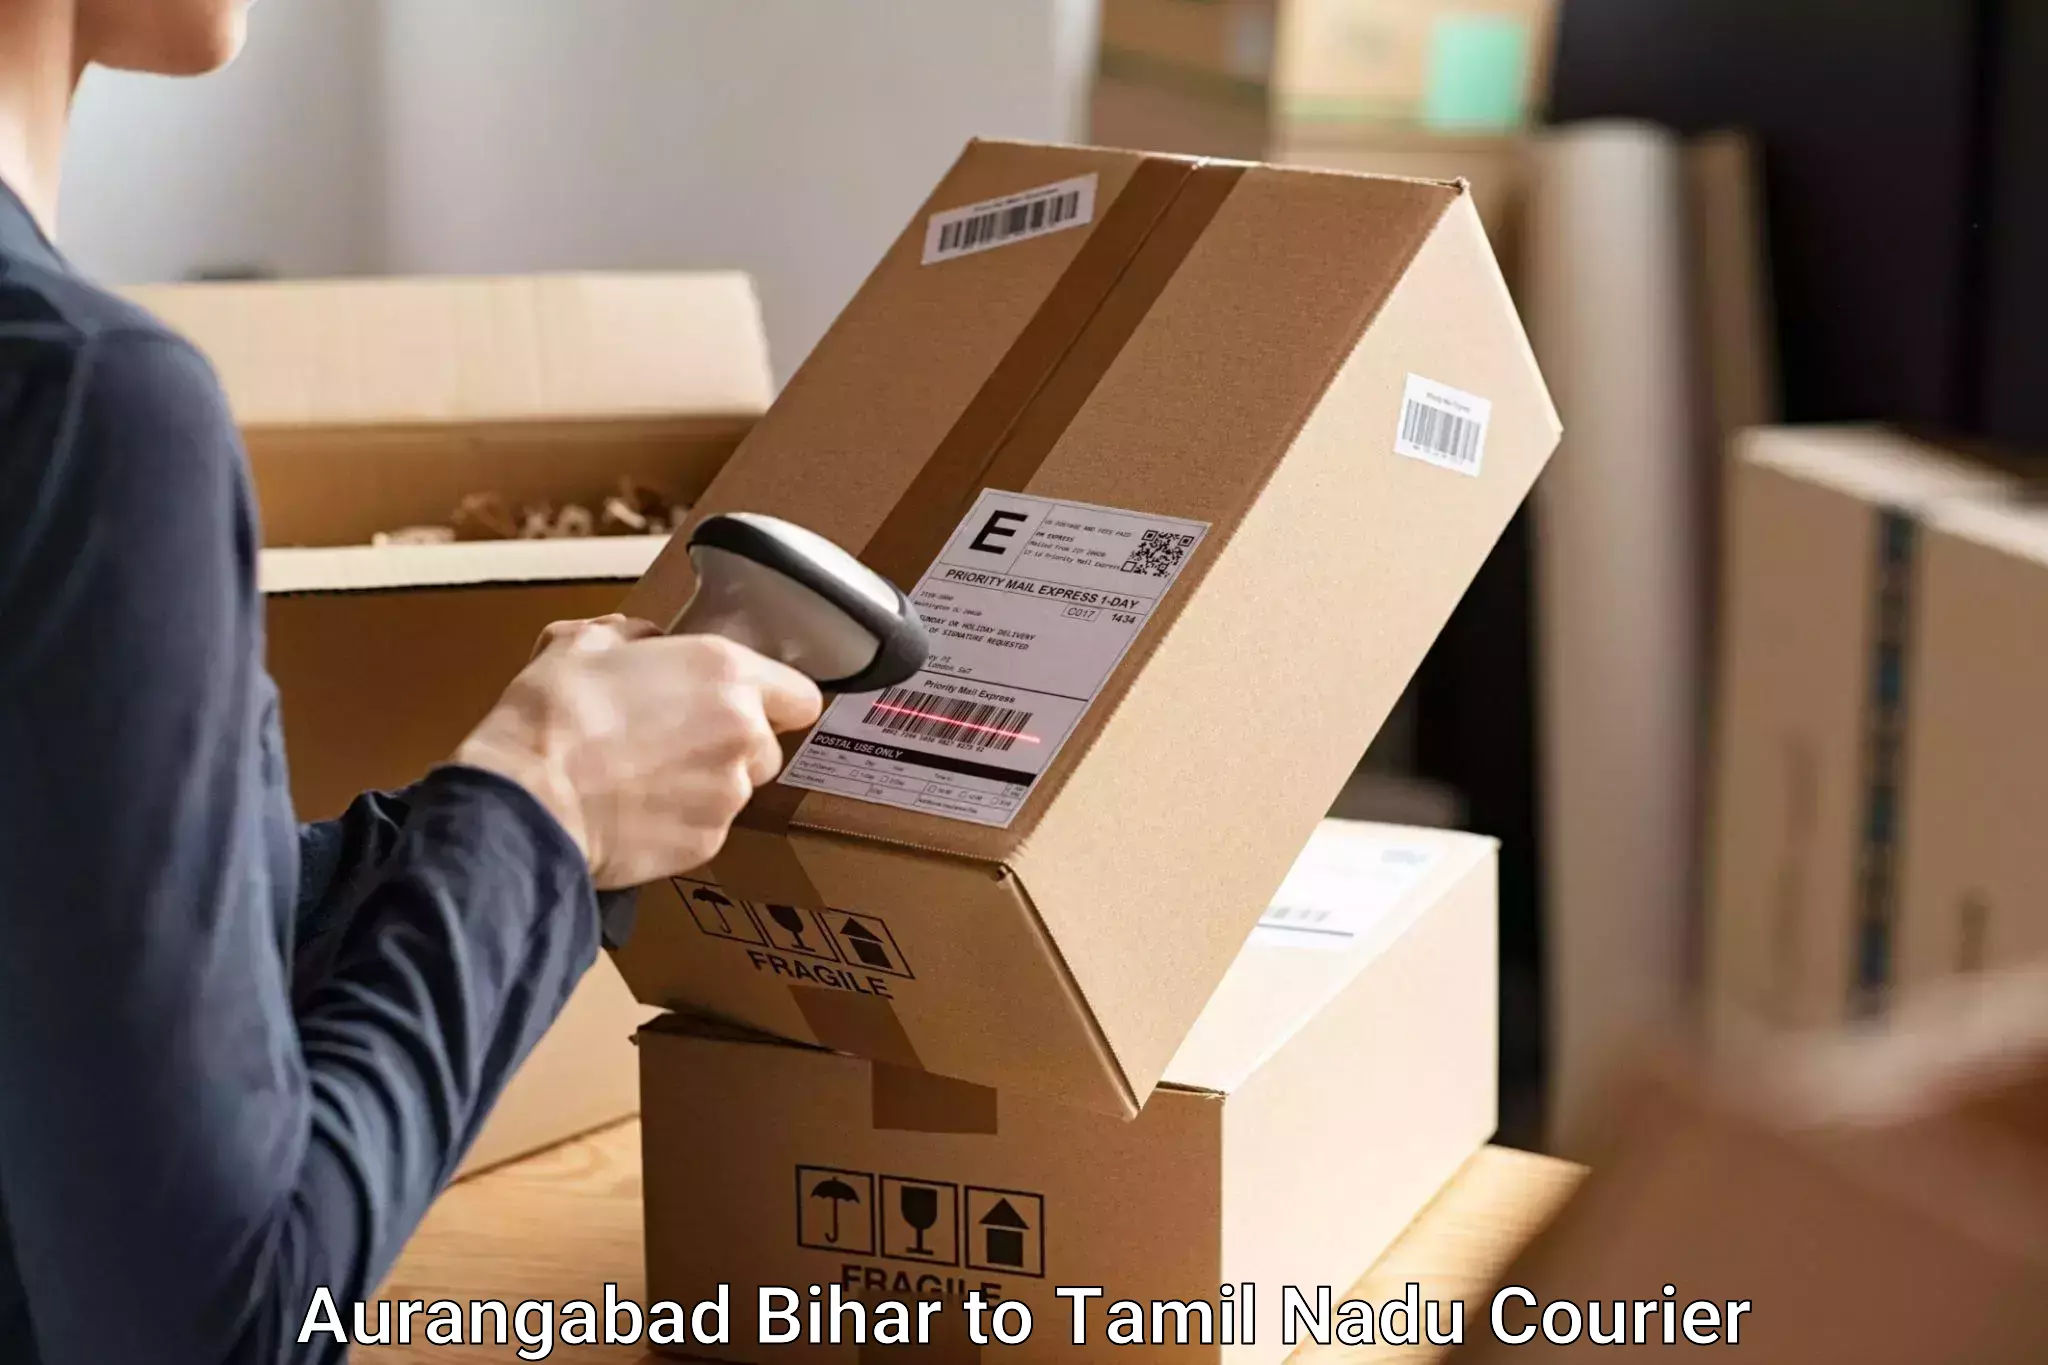 Baggage courier solutions Aurangabad Bihar to Erode